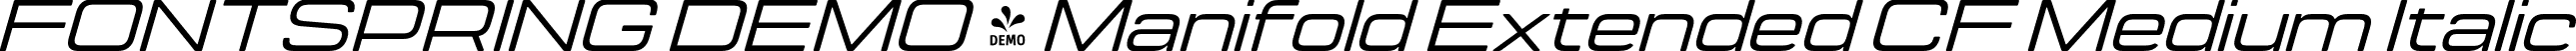 FONTSPRING DEMO - Manifold Extended CF Medium Italic font - Fontspring-DEMO-manifoldextendedcf-mediumoblique.otf